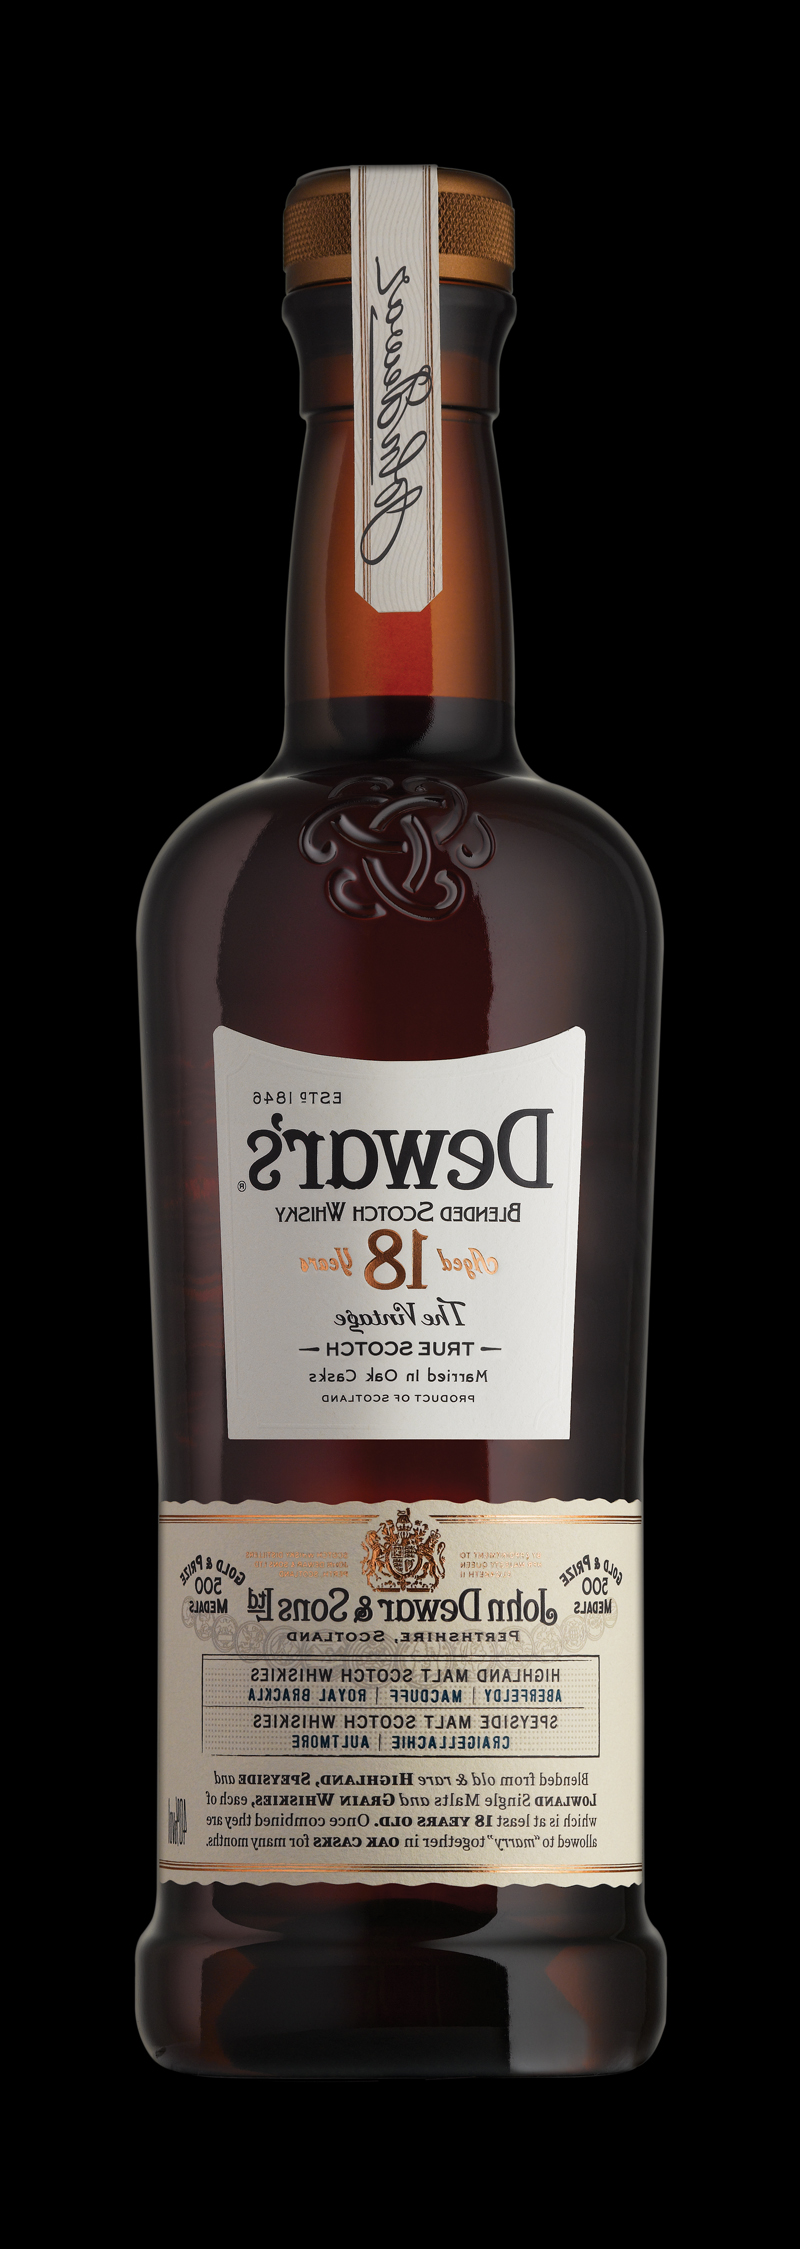 世界上获奖最多的混合苏格兰威士忌包装设计(图13)